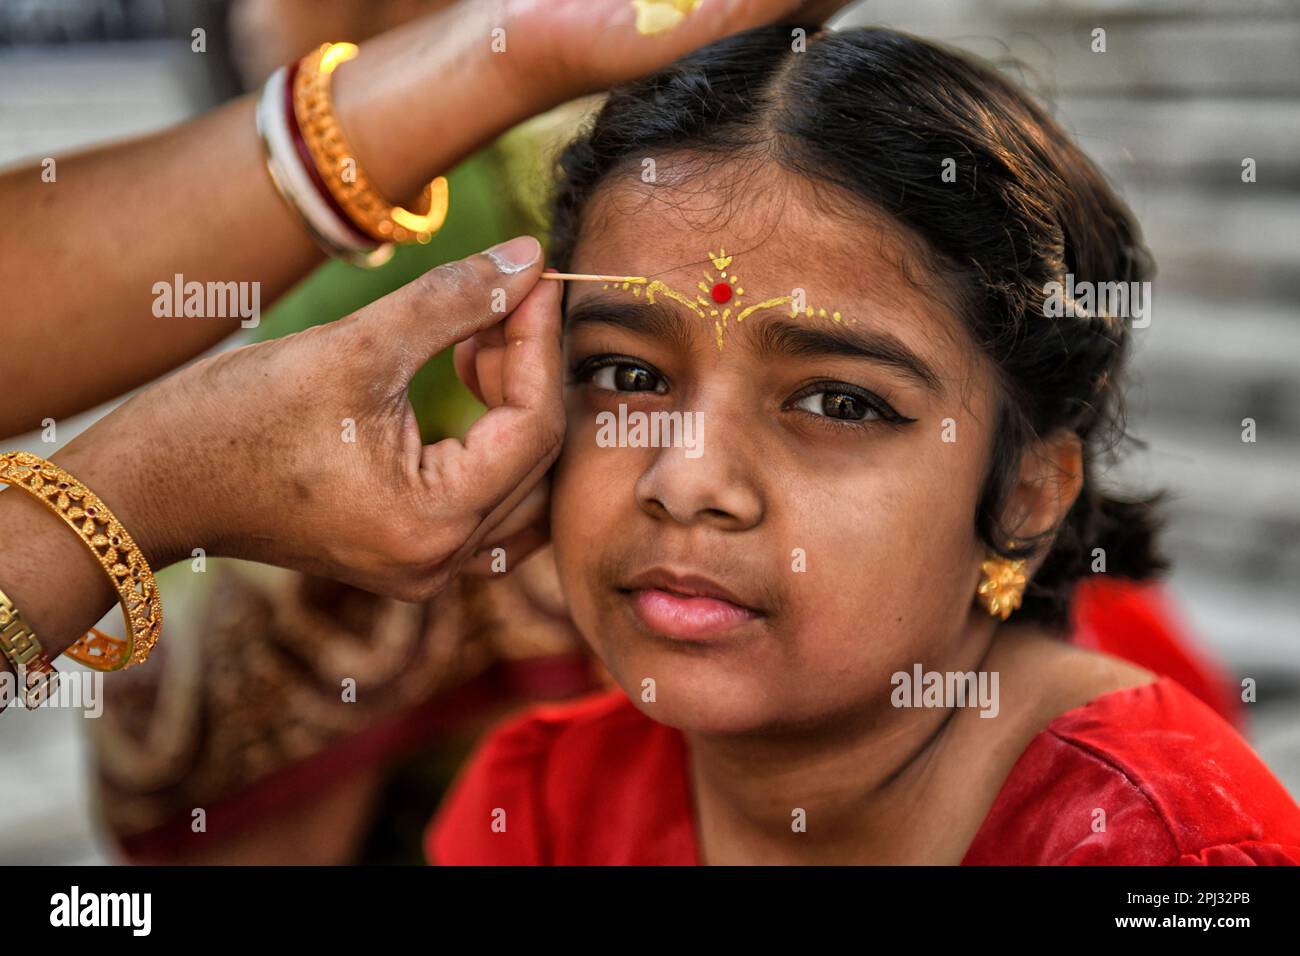 Ein kleines Mädchen, das gesehen wurde, wie es sich für das Kumari-Puja-Ritual vorbereitete. Kumari Puja ist eine indische hinduistische Tradition, die hauptsächlich während der Durga Puja/Basanti Puja/Navratri nach Hindu-Kalender gefeiert wird. Kumari beschreibt tatsächlich ein junges Mädchen im Alter von 1 bis 16 Jahren, das während des Übergangs von Ashtami/Navami tithi von Durga Puja/Navarintosh nach Hindu-Mythologie verehrt wird. Junge Mädchen, die während des Kumari Puja von ihren Müttern im Adyapith Tempel verehrt wurden, wird angenommen, dass Kumari Puja den Gläubigen und auch dem kleinen Mädchen viele Segen gewährt. Devotieren Stockfoto